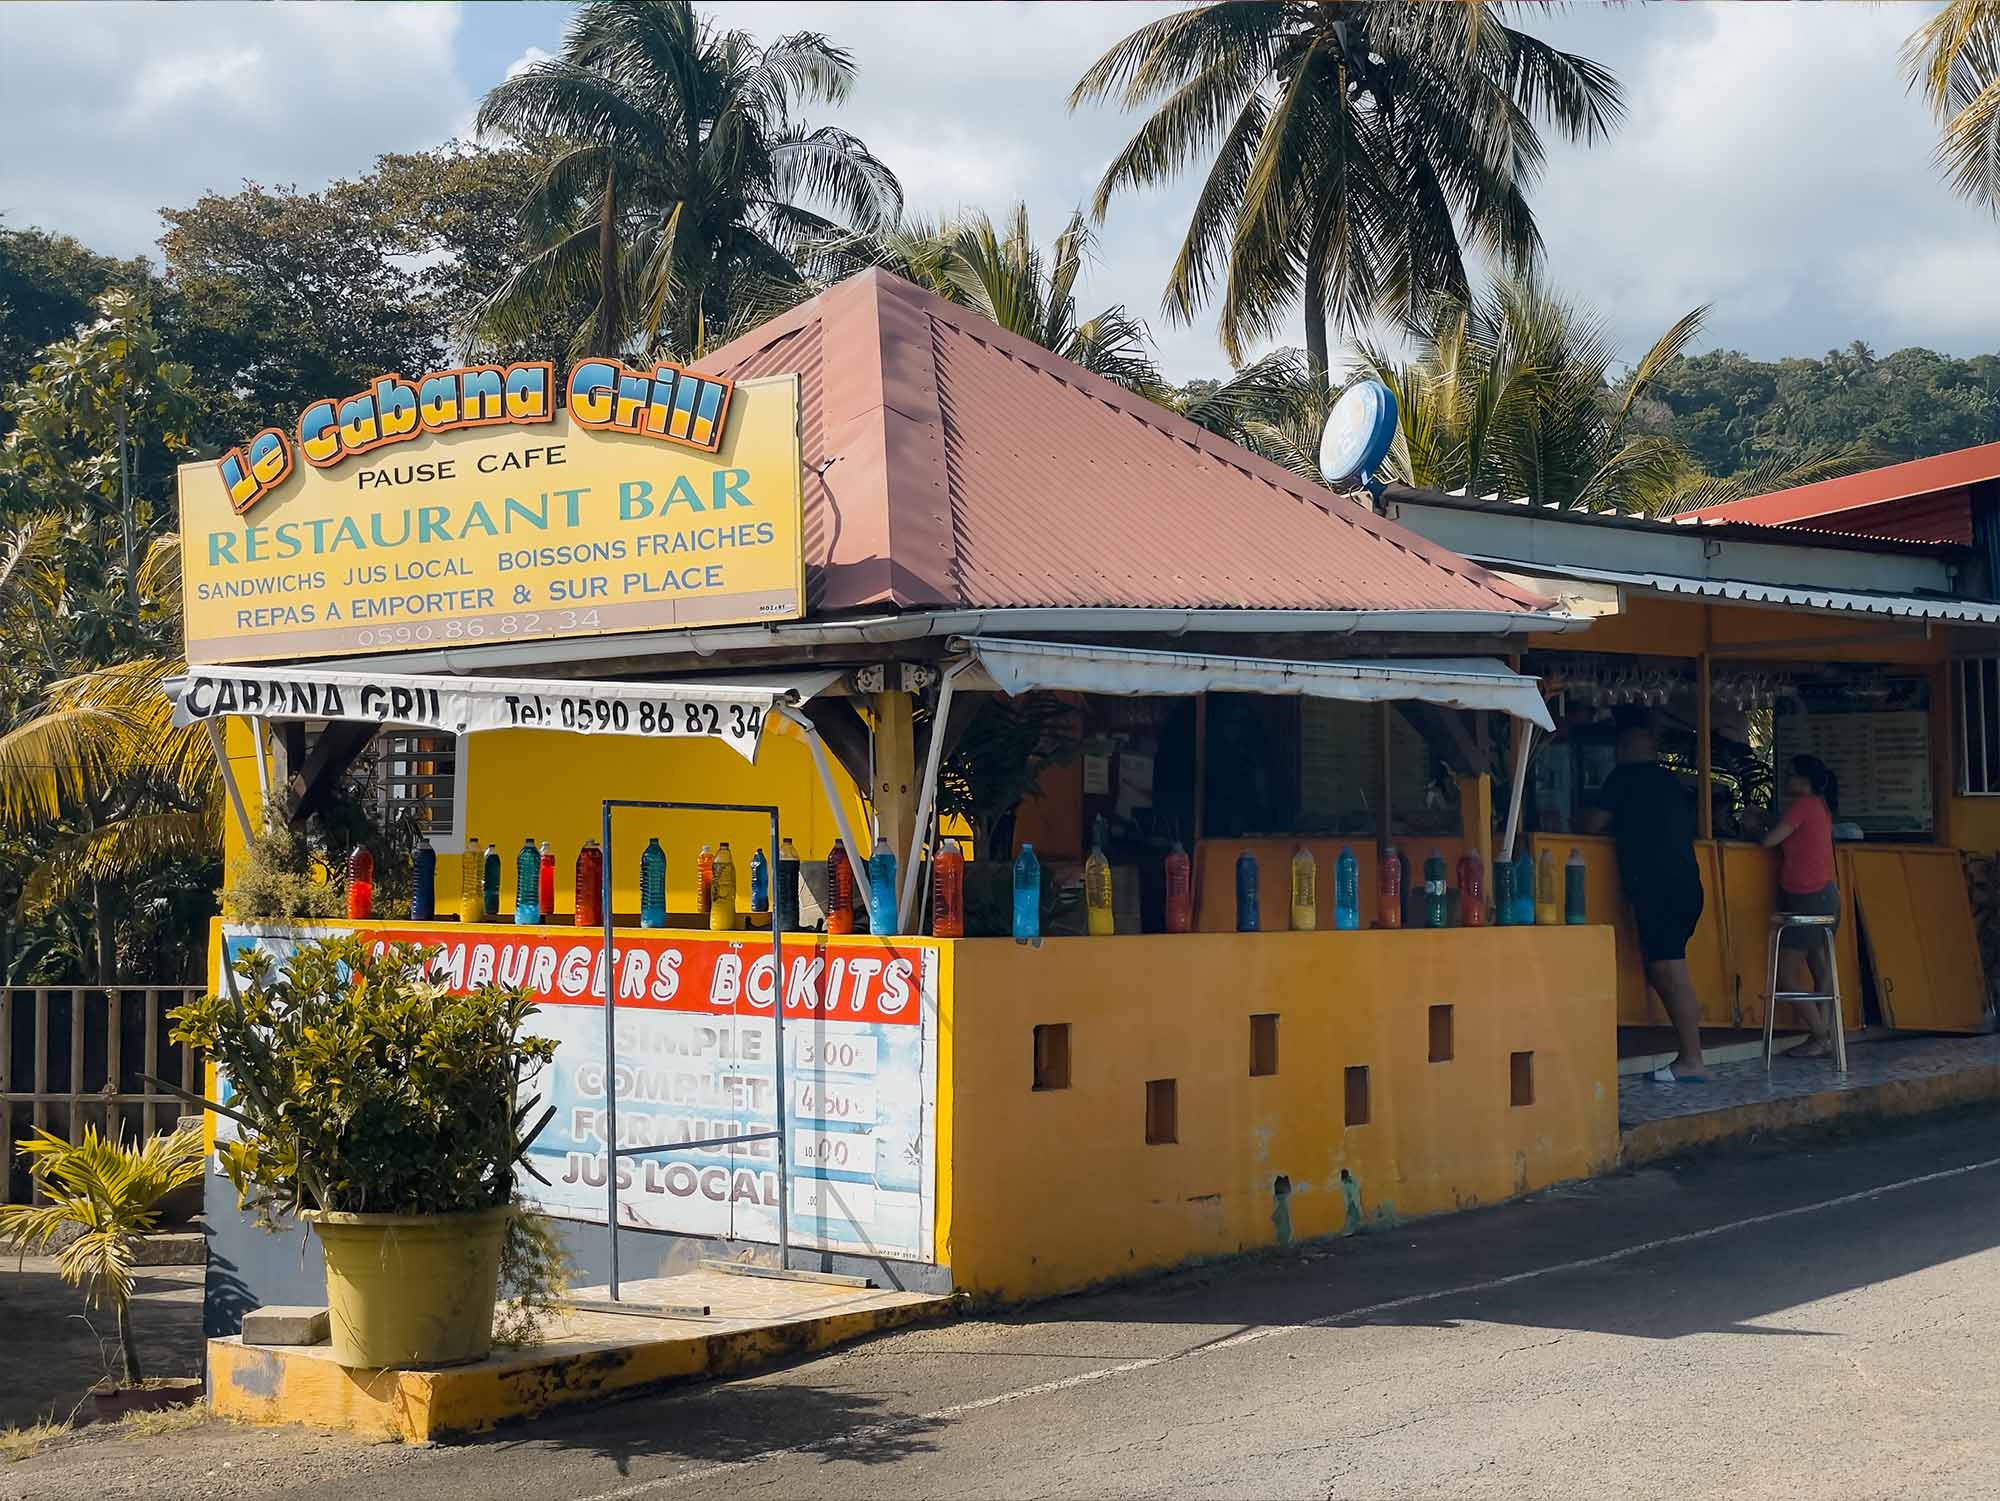 Le Cabana Grill